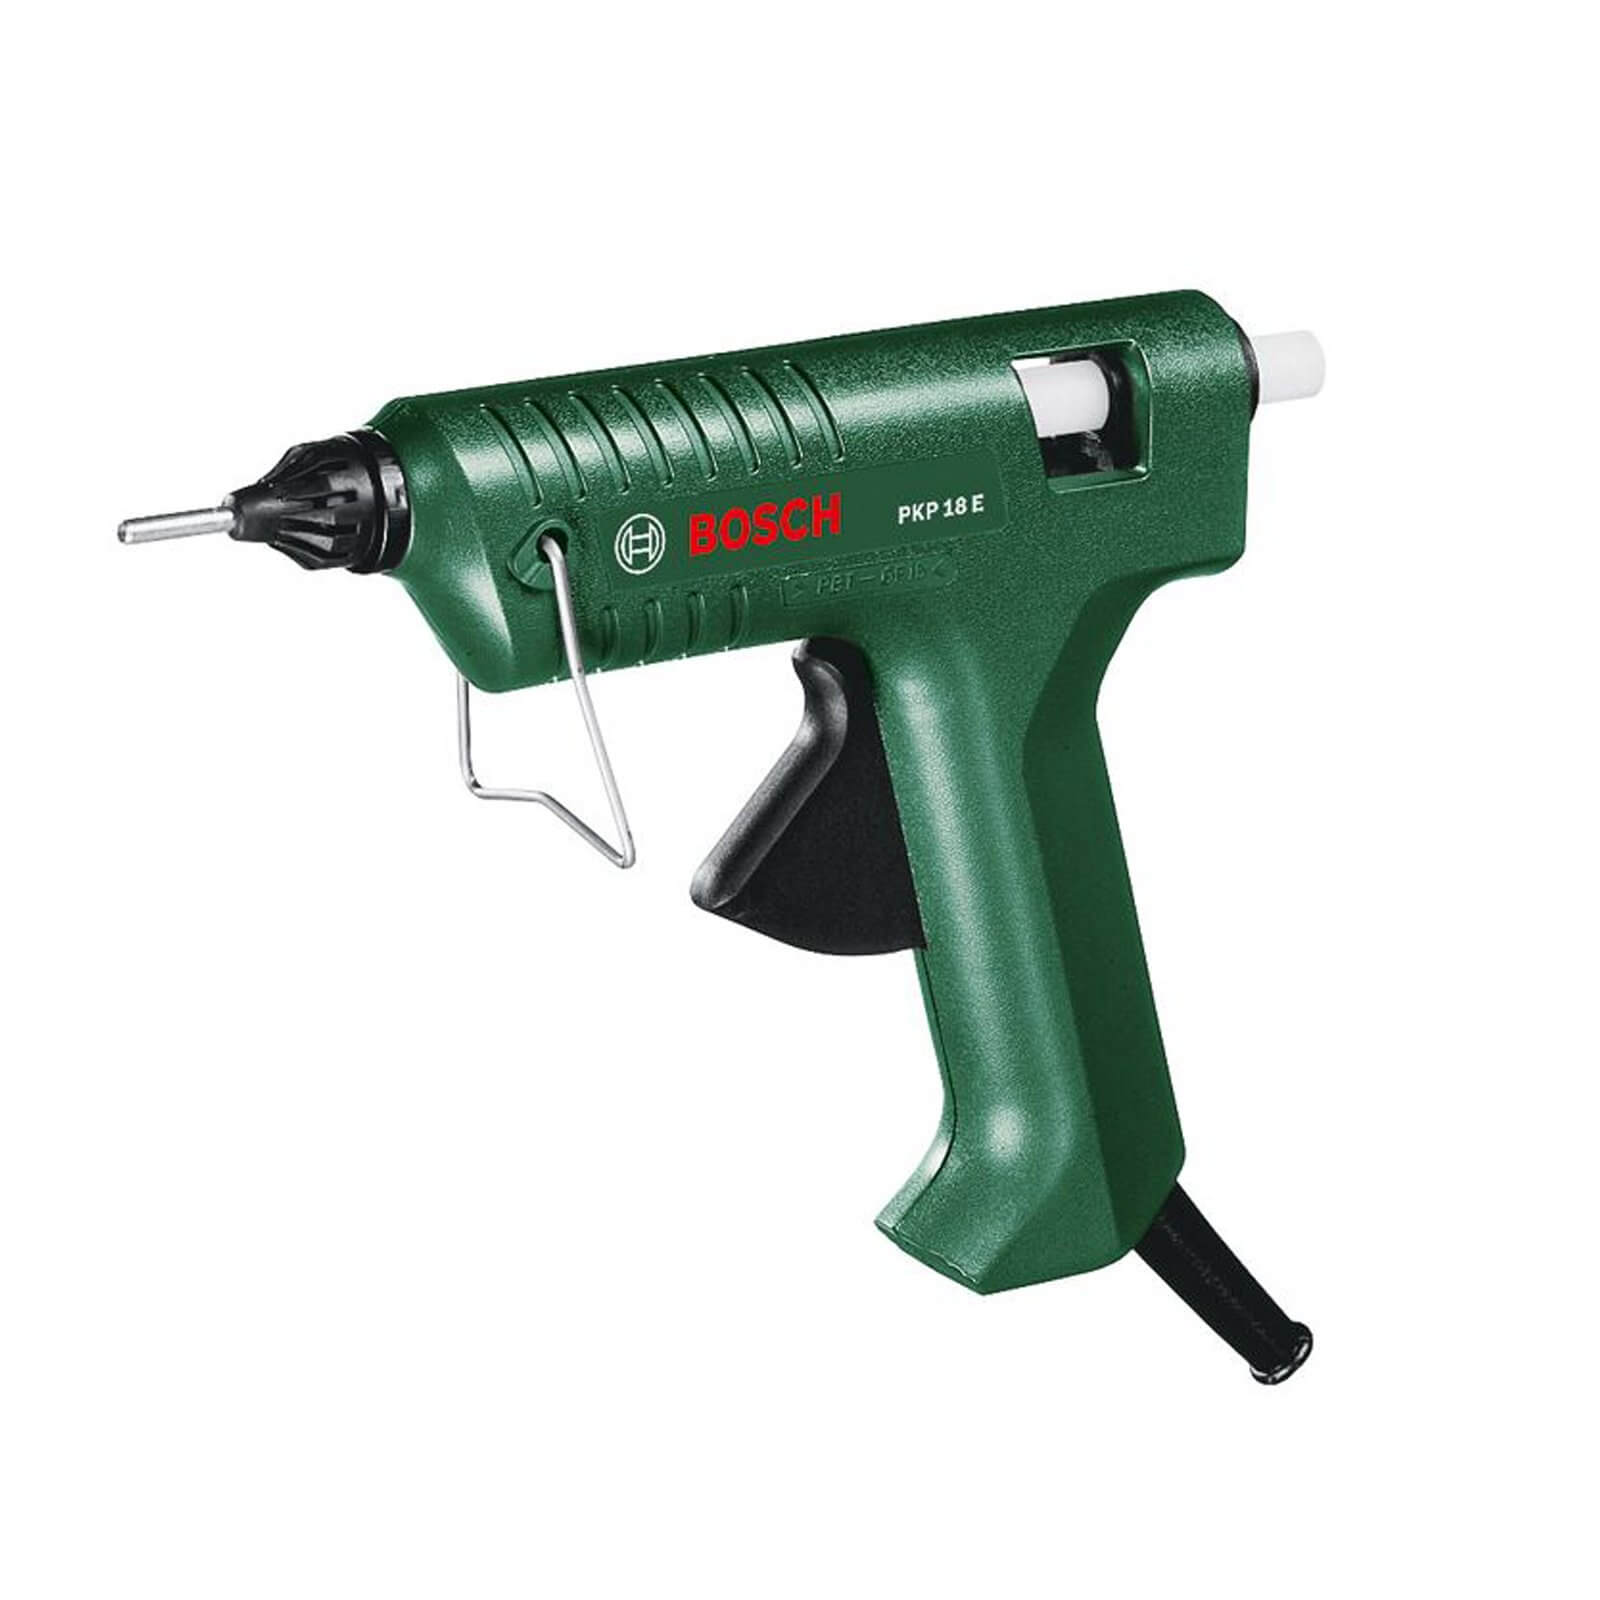 Bosch PKP 18 E Glue Gun